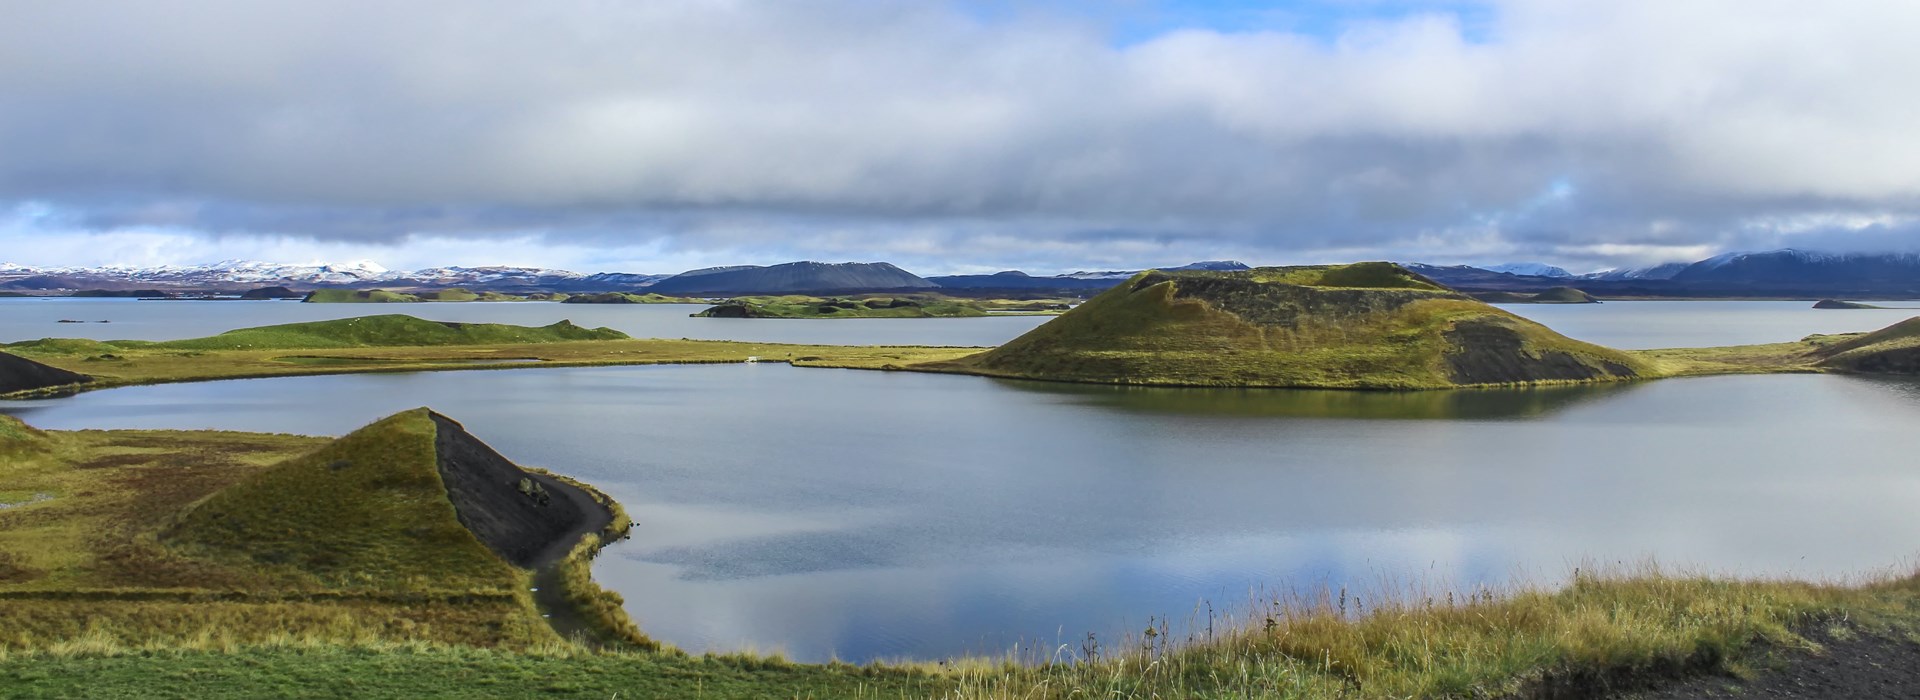 Visiter Skútustaðir - Islande